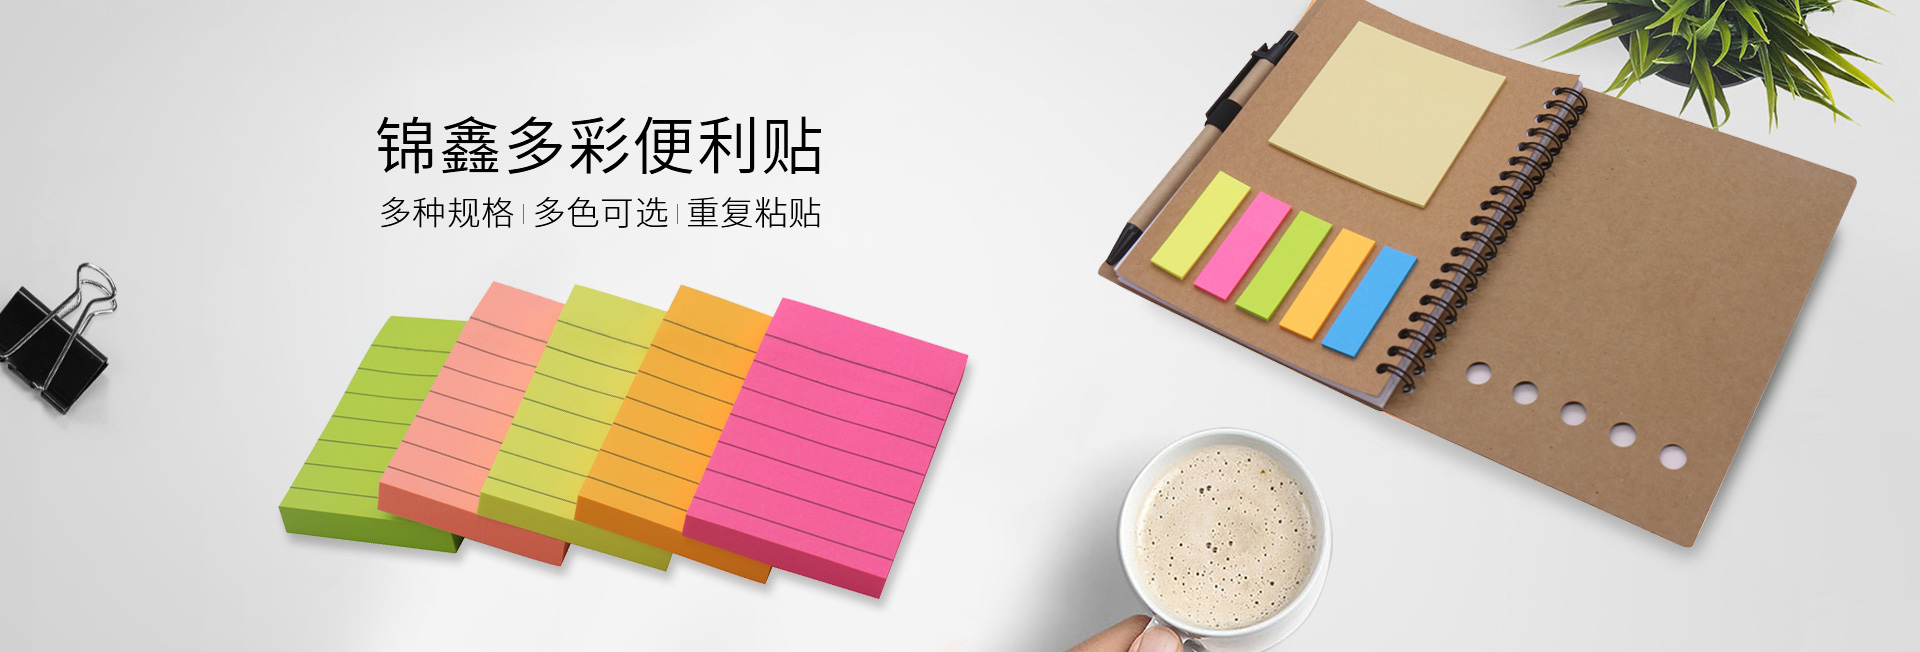 yiwu jinxin-jinxin packaging-jinxin sticky note-sticky note manufacturer